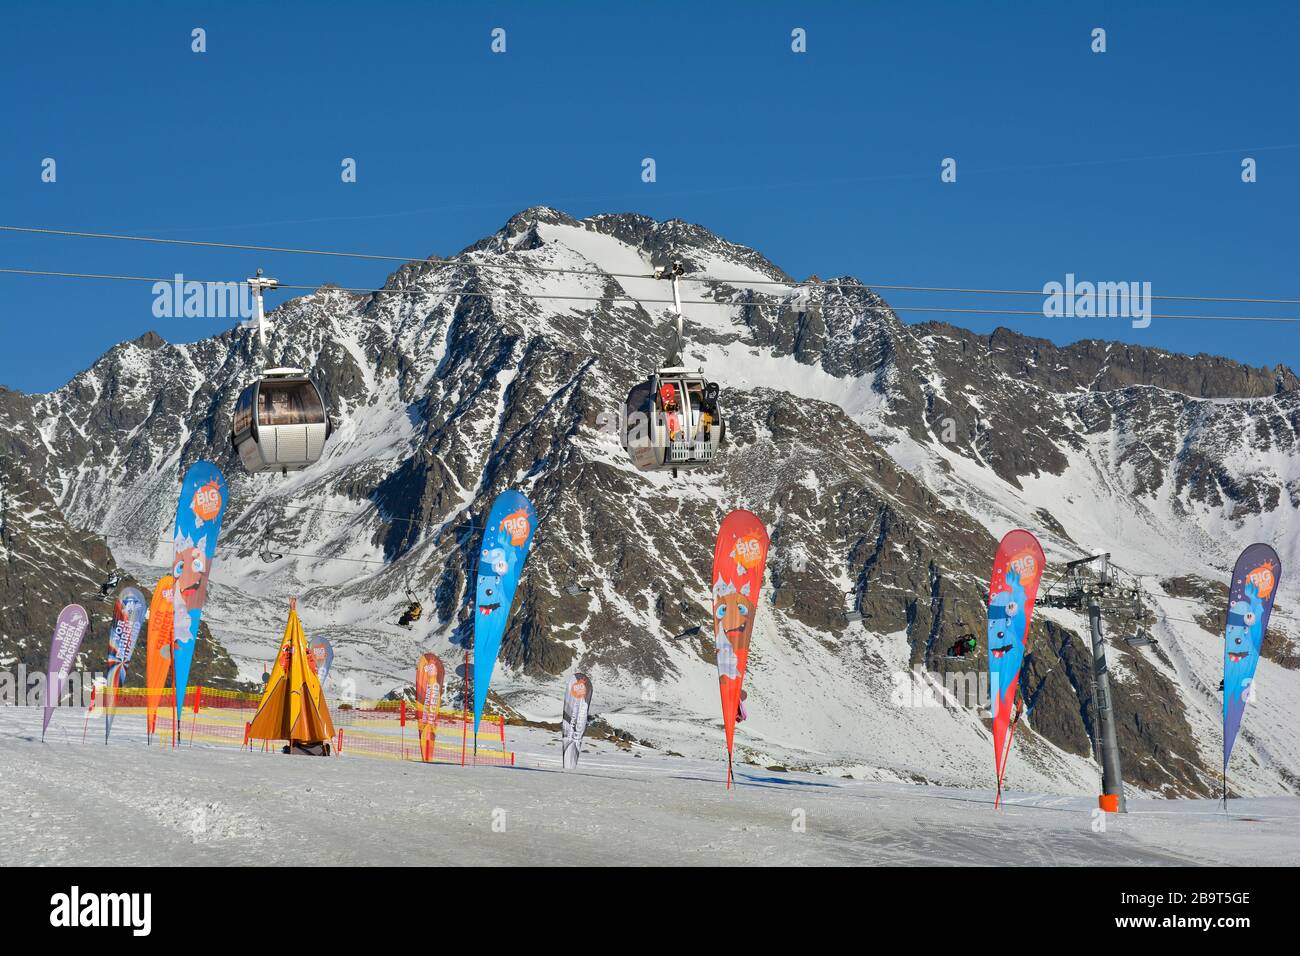 Stubai, Austria - December 23rd 2015: Cable car in ski resort stubaier glacier, preferred mode of transport Stock Photo